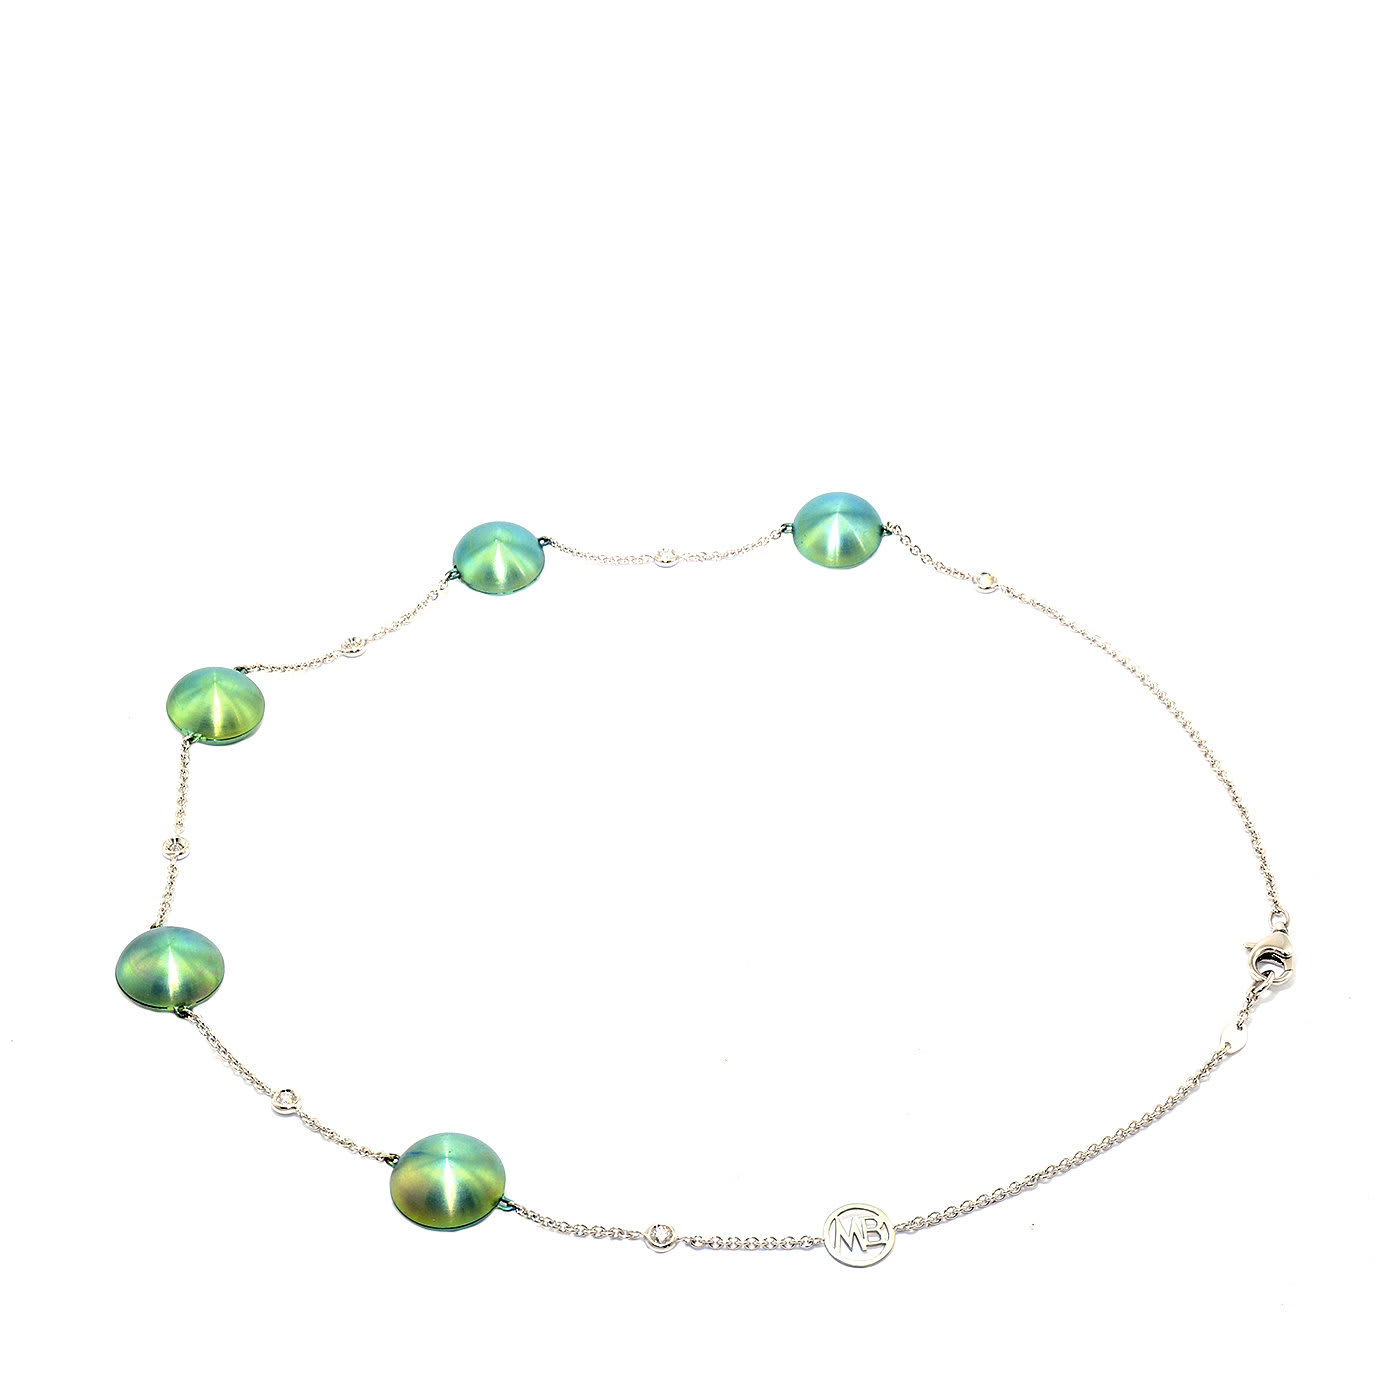 Futura Necklace in Titanium, Gold and Diamonds - Margherita Burgener